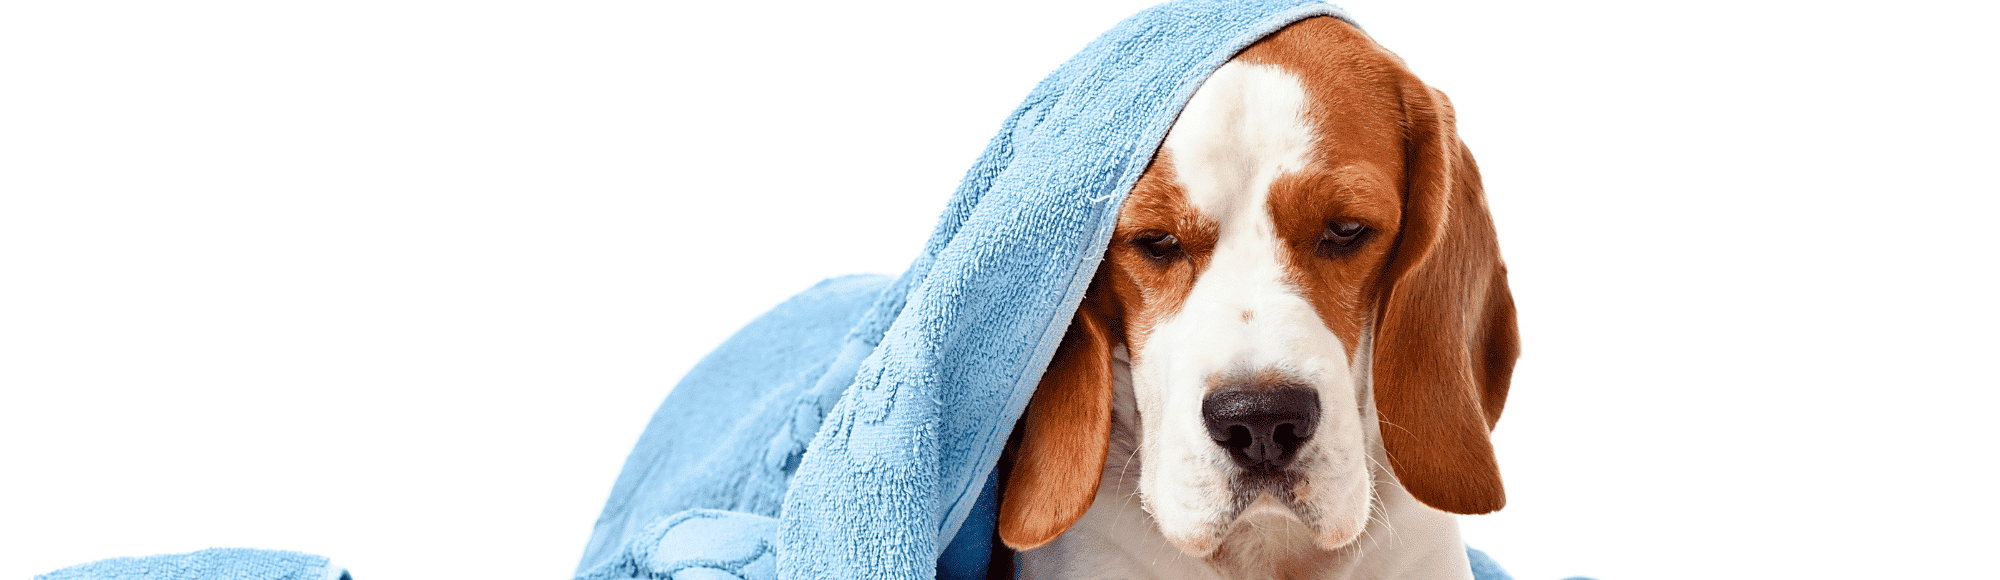 Ein Hund liegt unter einer blauen Decke